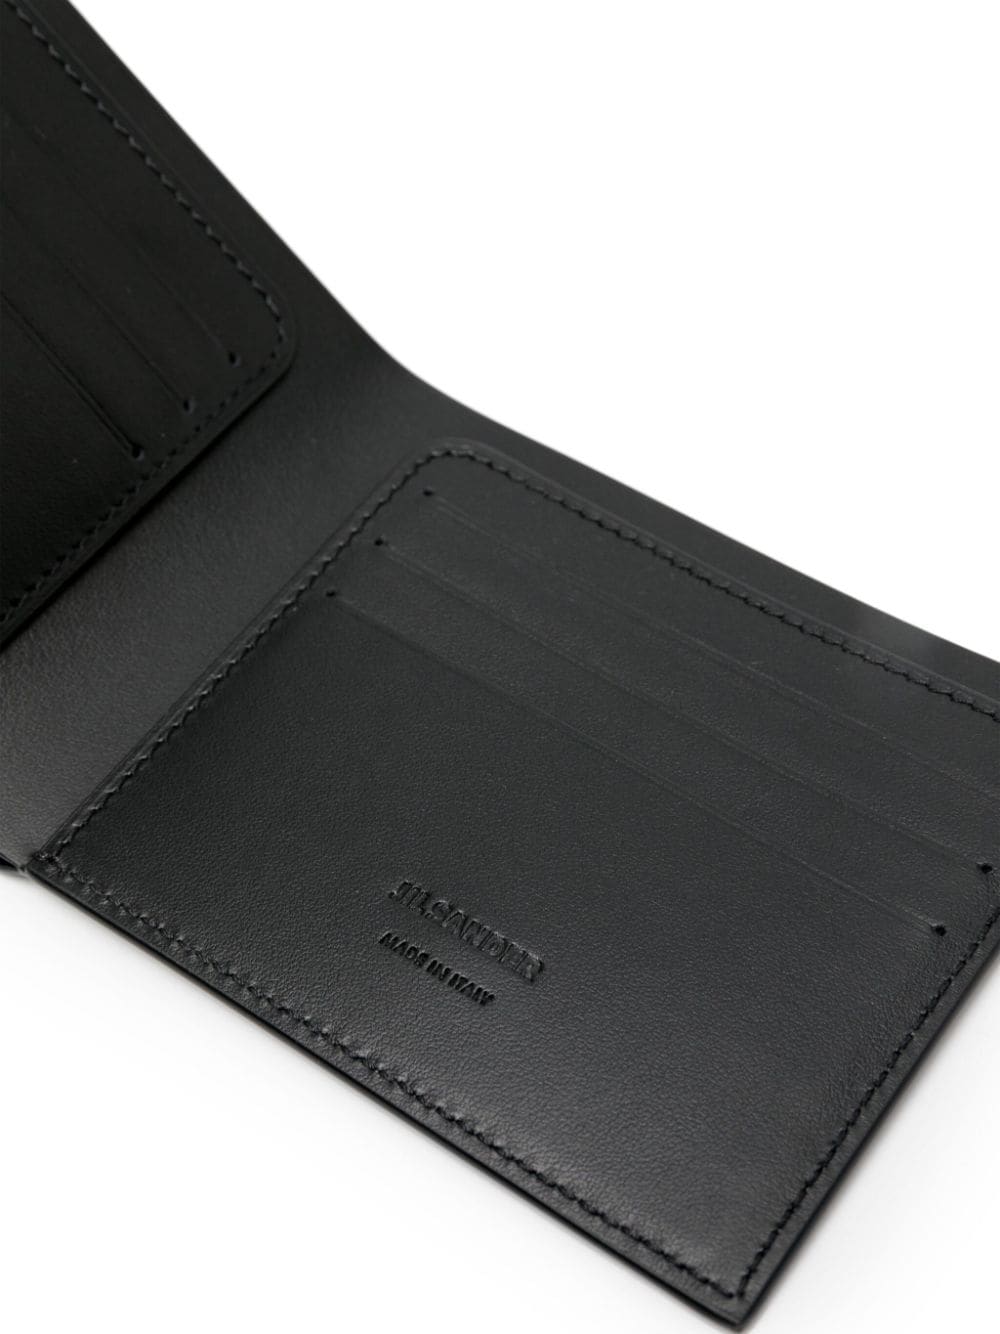 Leather bi-fold wallet<BR/><BR/><BR/>